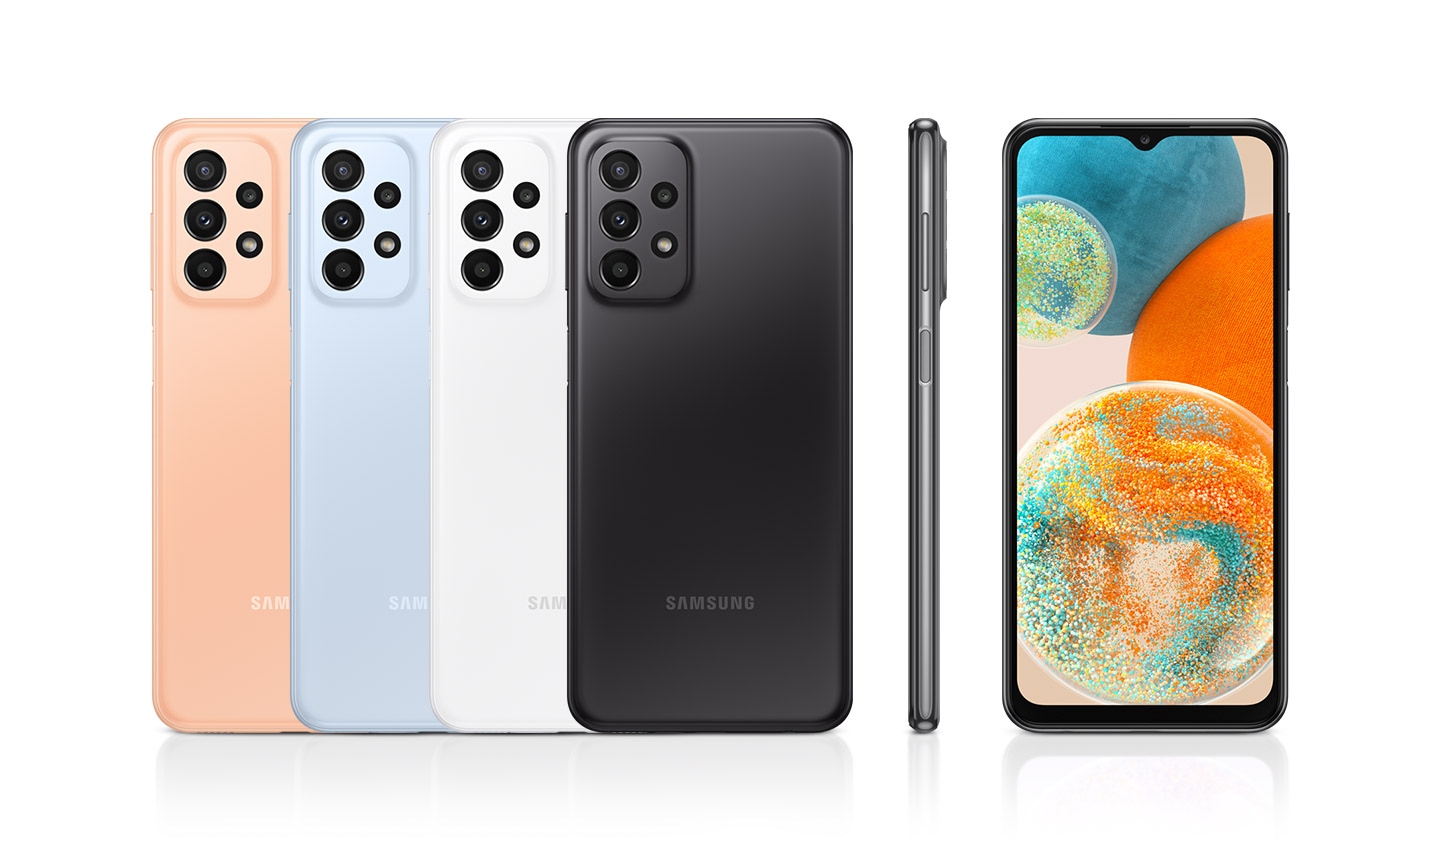 Prikazano je šest uređaja kako bi se dopalo njihovim bojama i dizajnom. Četiri obrnute su u narandžastoj, svetlo plavoj, beloj i crnoj\ dok jedna gleda na prednju stranu, a druga na desnu stranu uređaja.